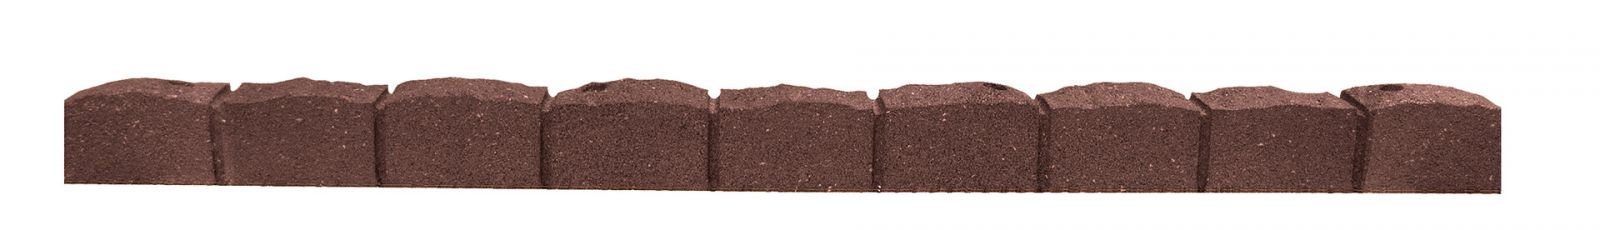 Hnědý gumový zahradní obrubník FLOMA Stone - délka 120 cm, šířka 7 cm, výška 8,8 cm